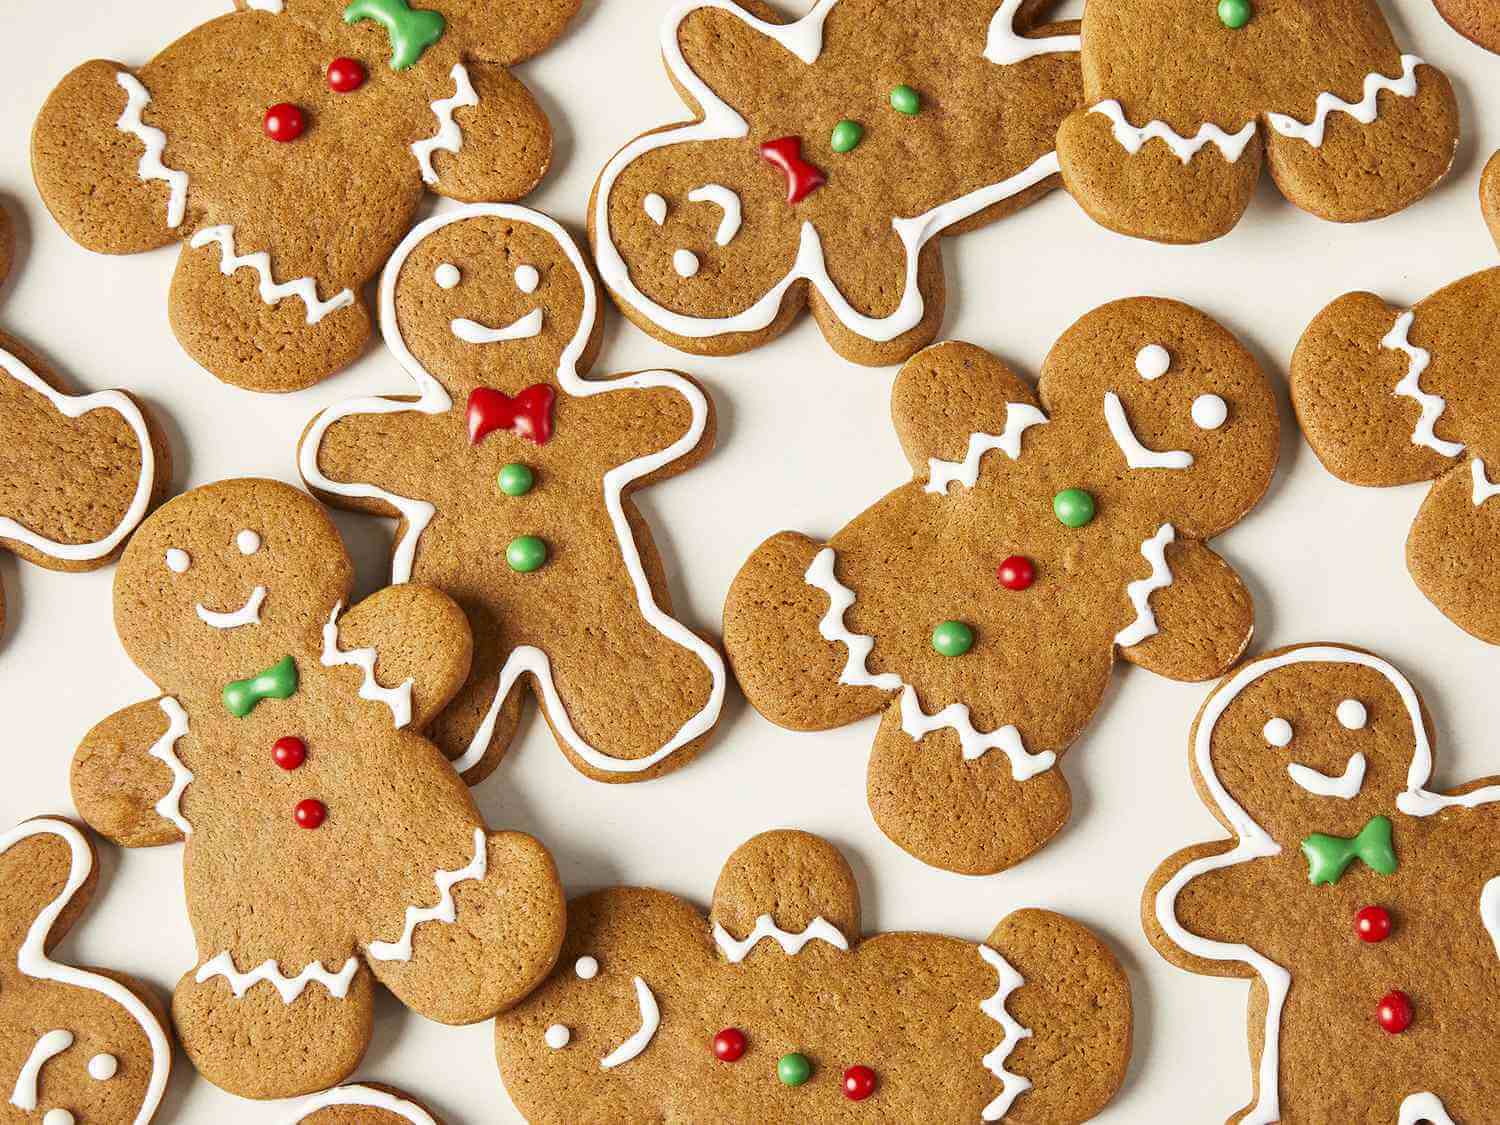 10.Gingerbread Cookies: